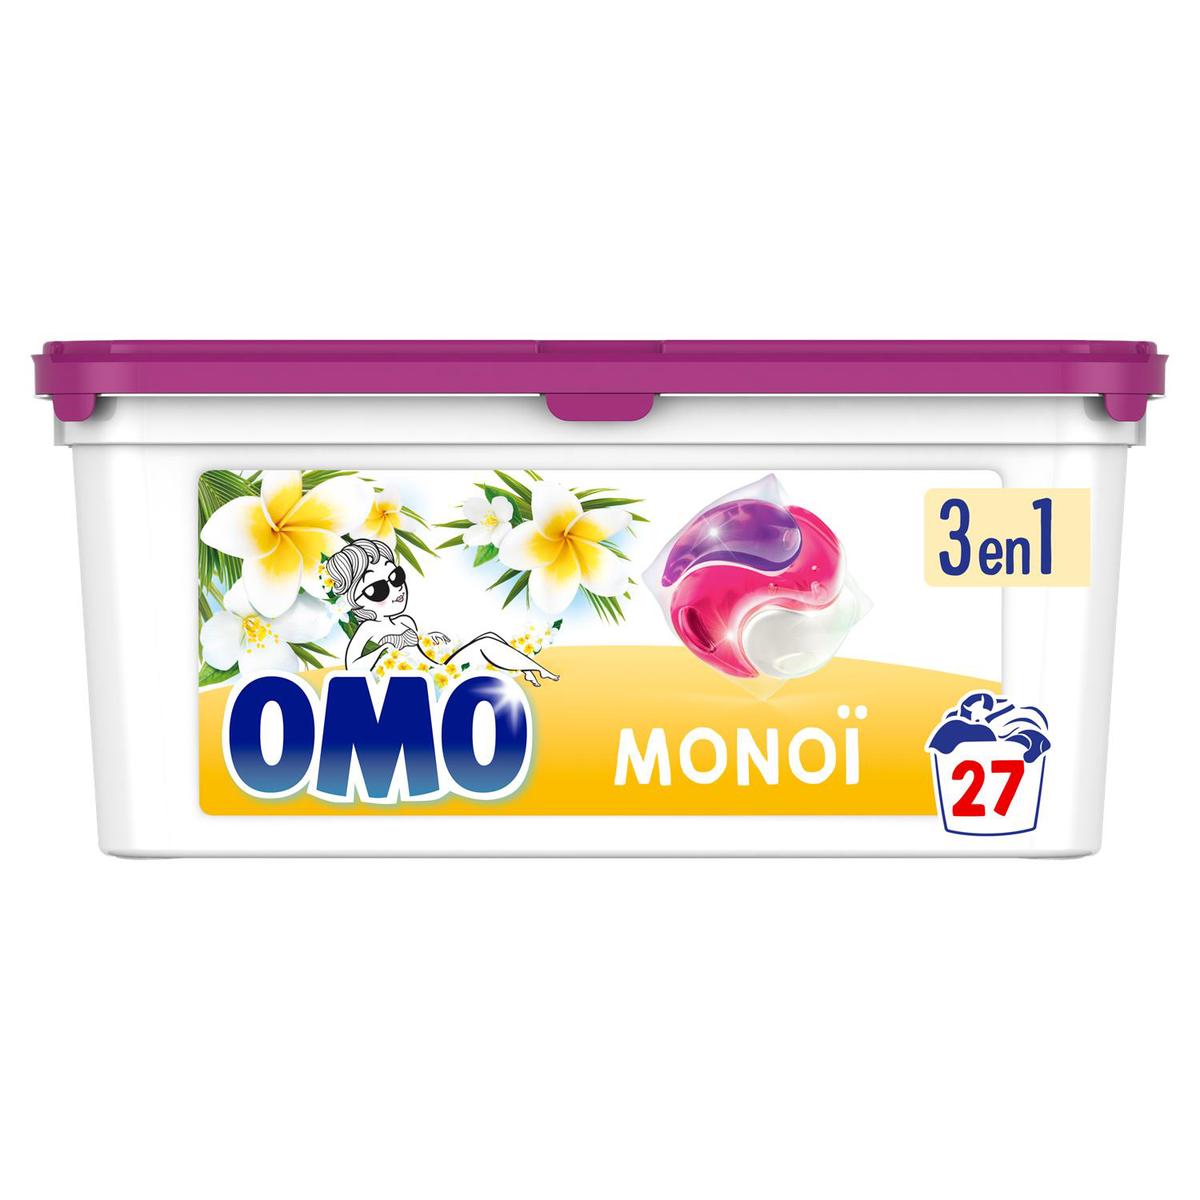 Achat Omo Lessive Capsule 3En1 Essences Naturelles Monoï, 27 capsules